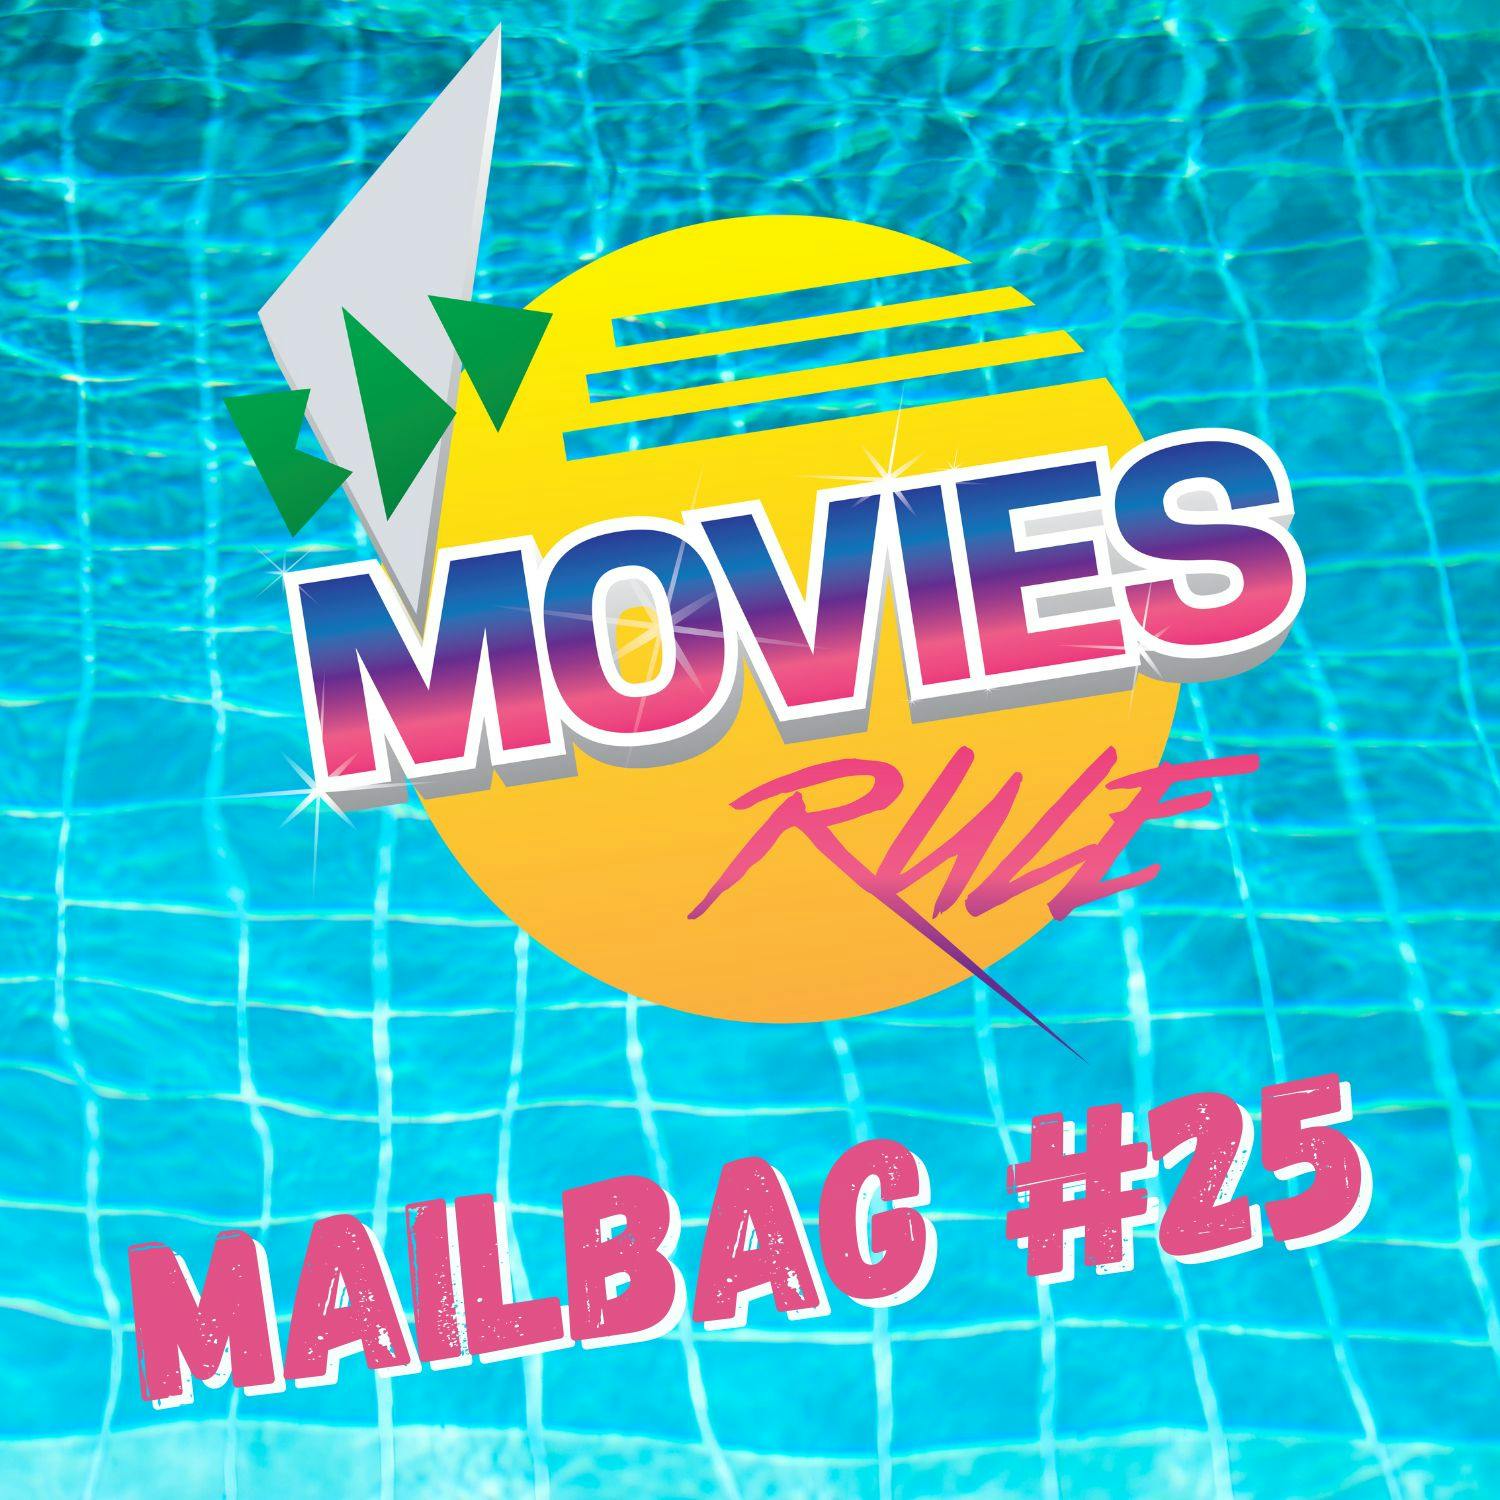 Mailbag #25 - The Underwear Episode